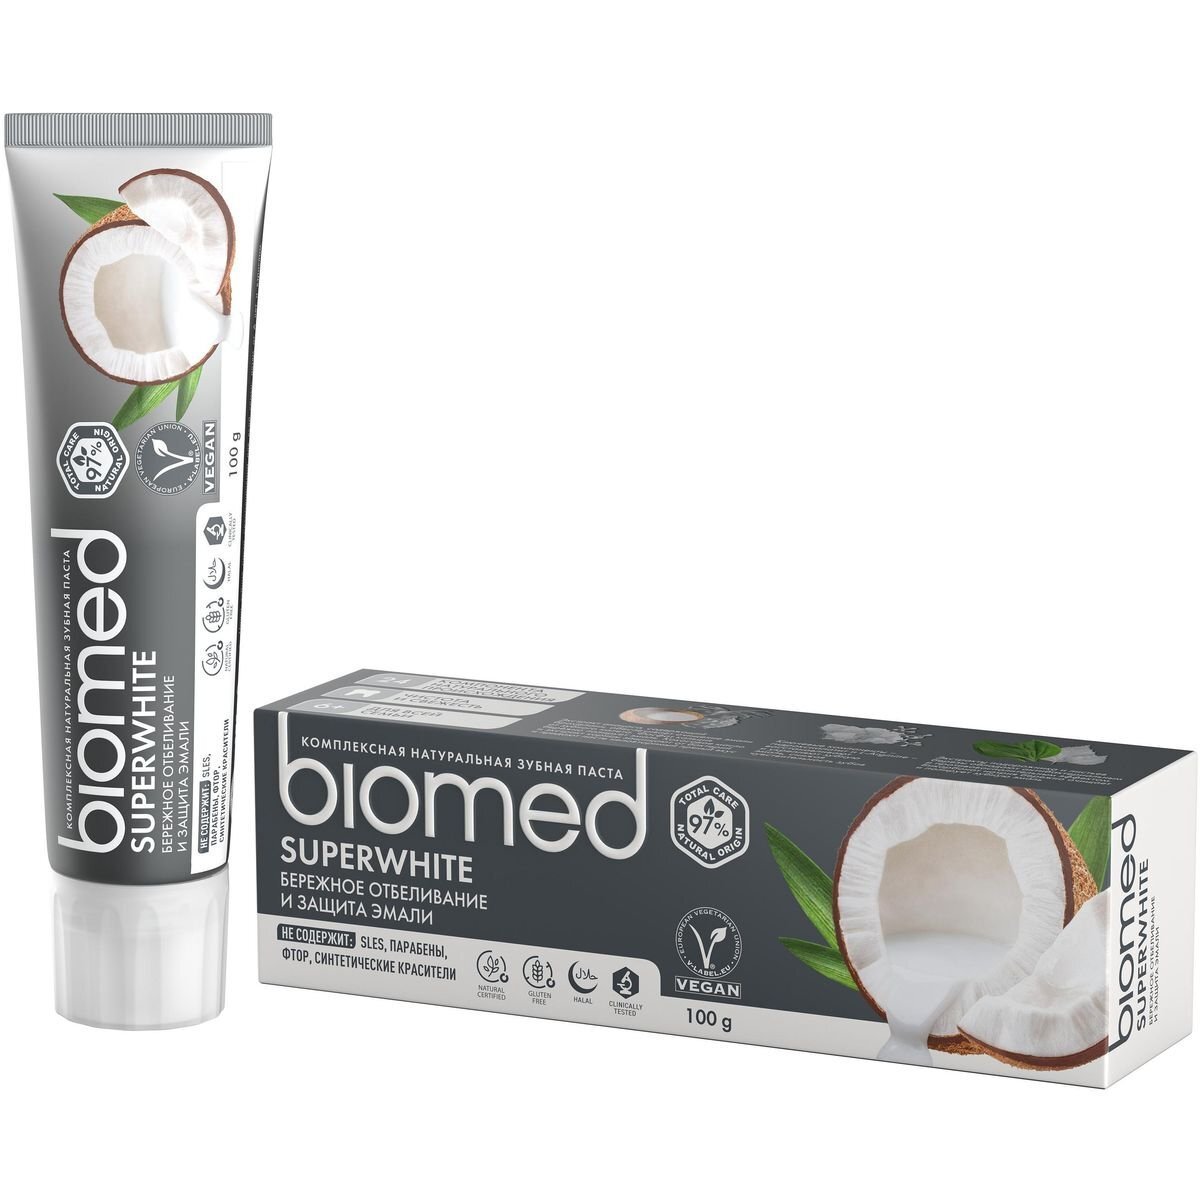 Зубная паста biomed biomed superwhite супервайт, 100 гр.